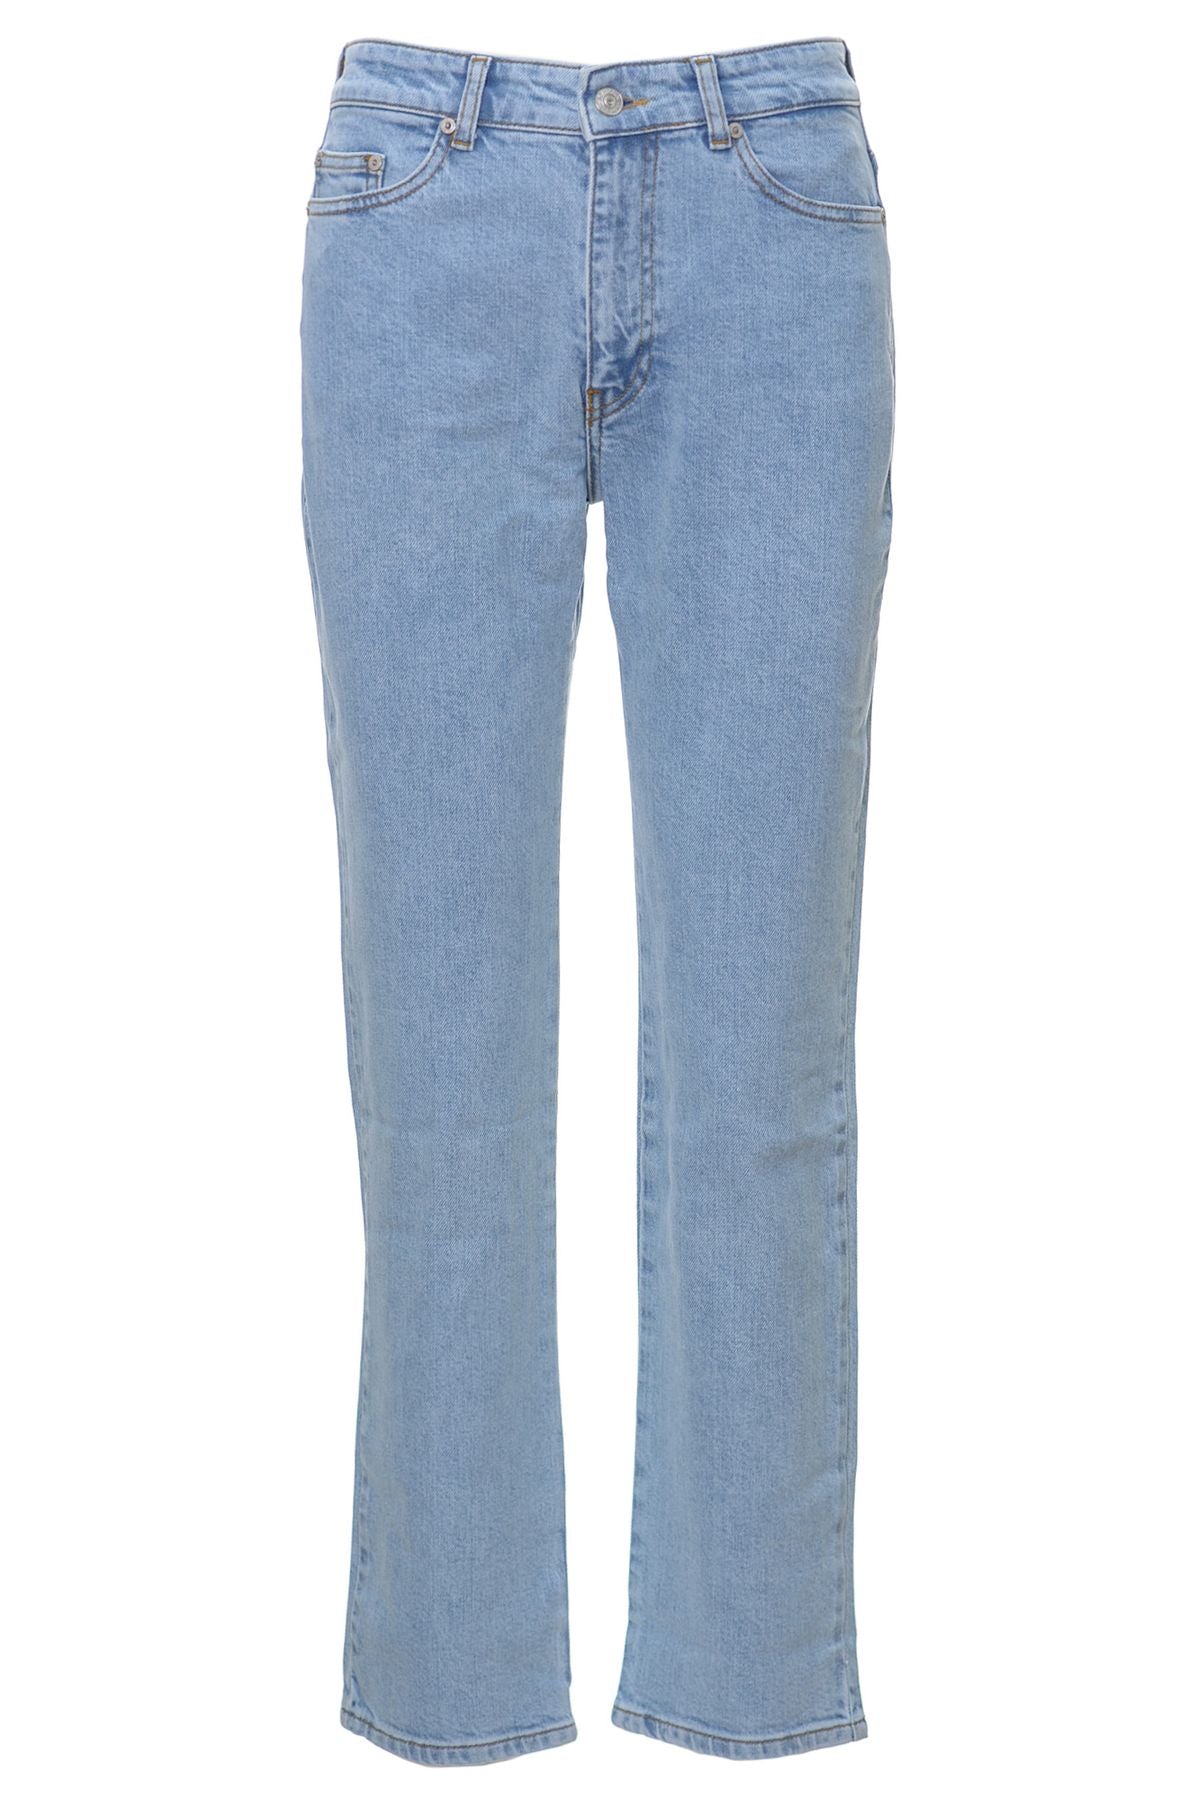 CHIARA FERRAGNI Jeans Primavera/Estate Cotone